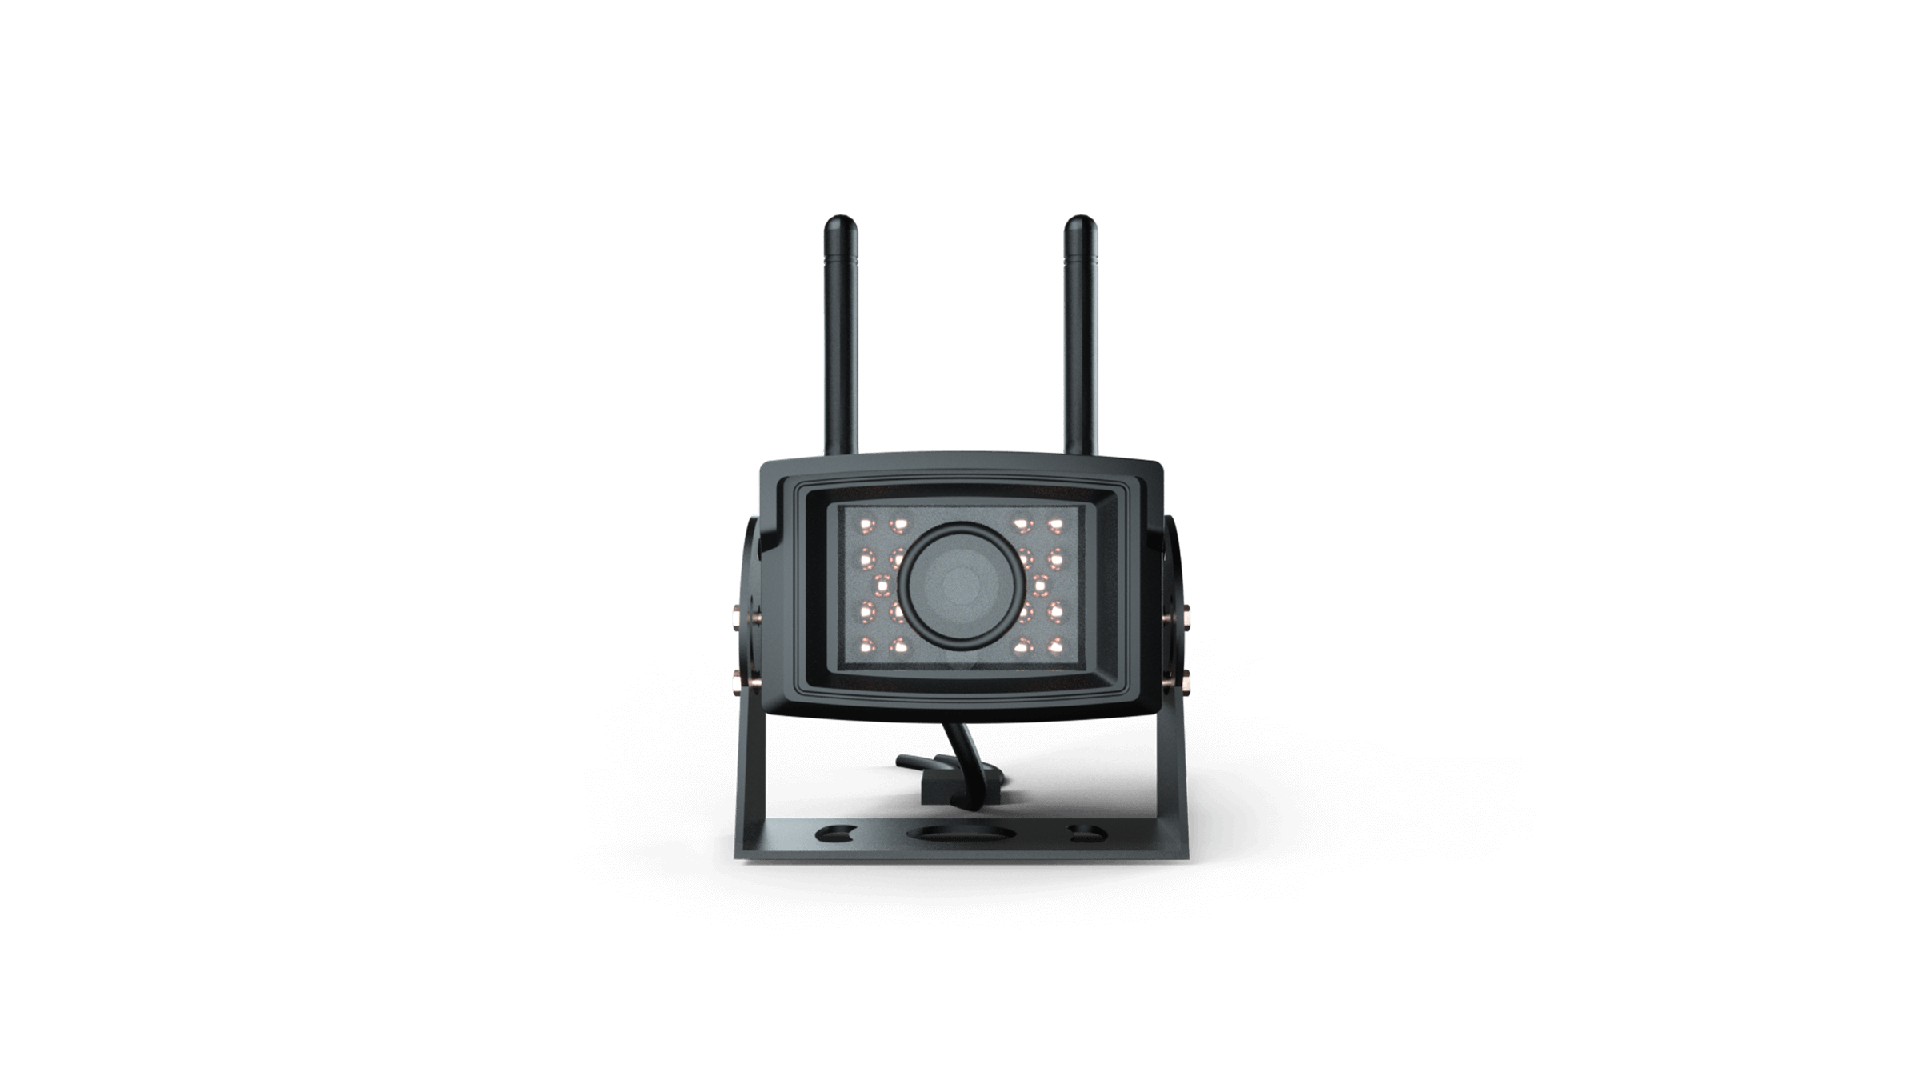 Envía imágenes en tiempo real (1080P) al terminal de control desde una distancia de hasta 20 metros, incluso de noche (visión nocturna infrarroja habilitada).